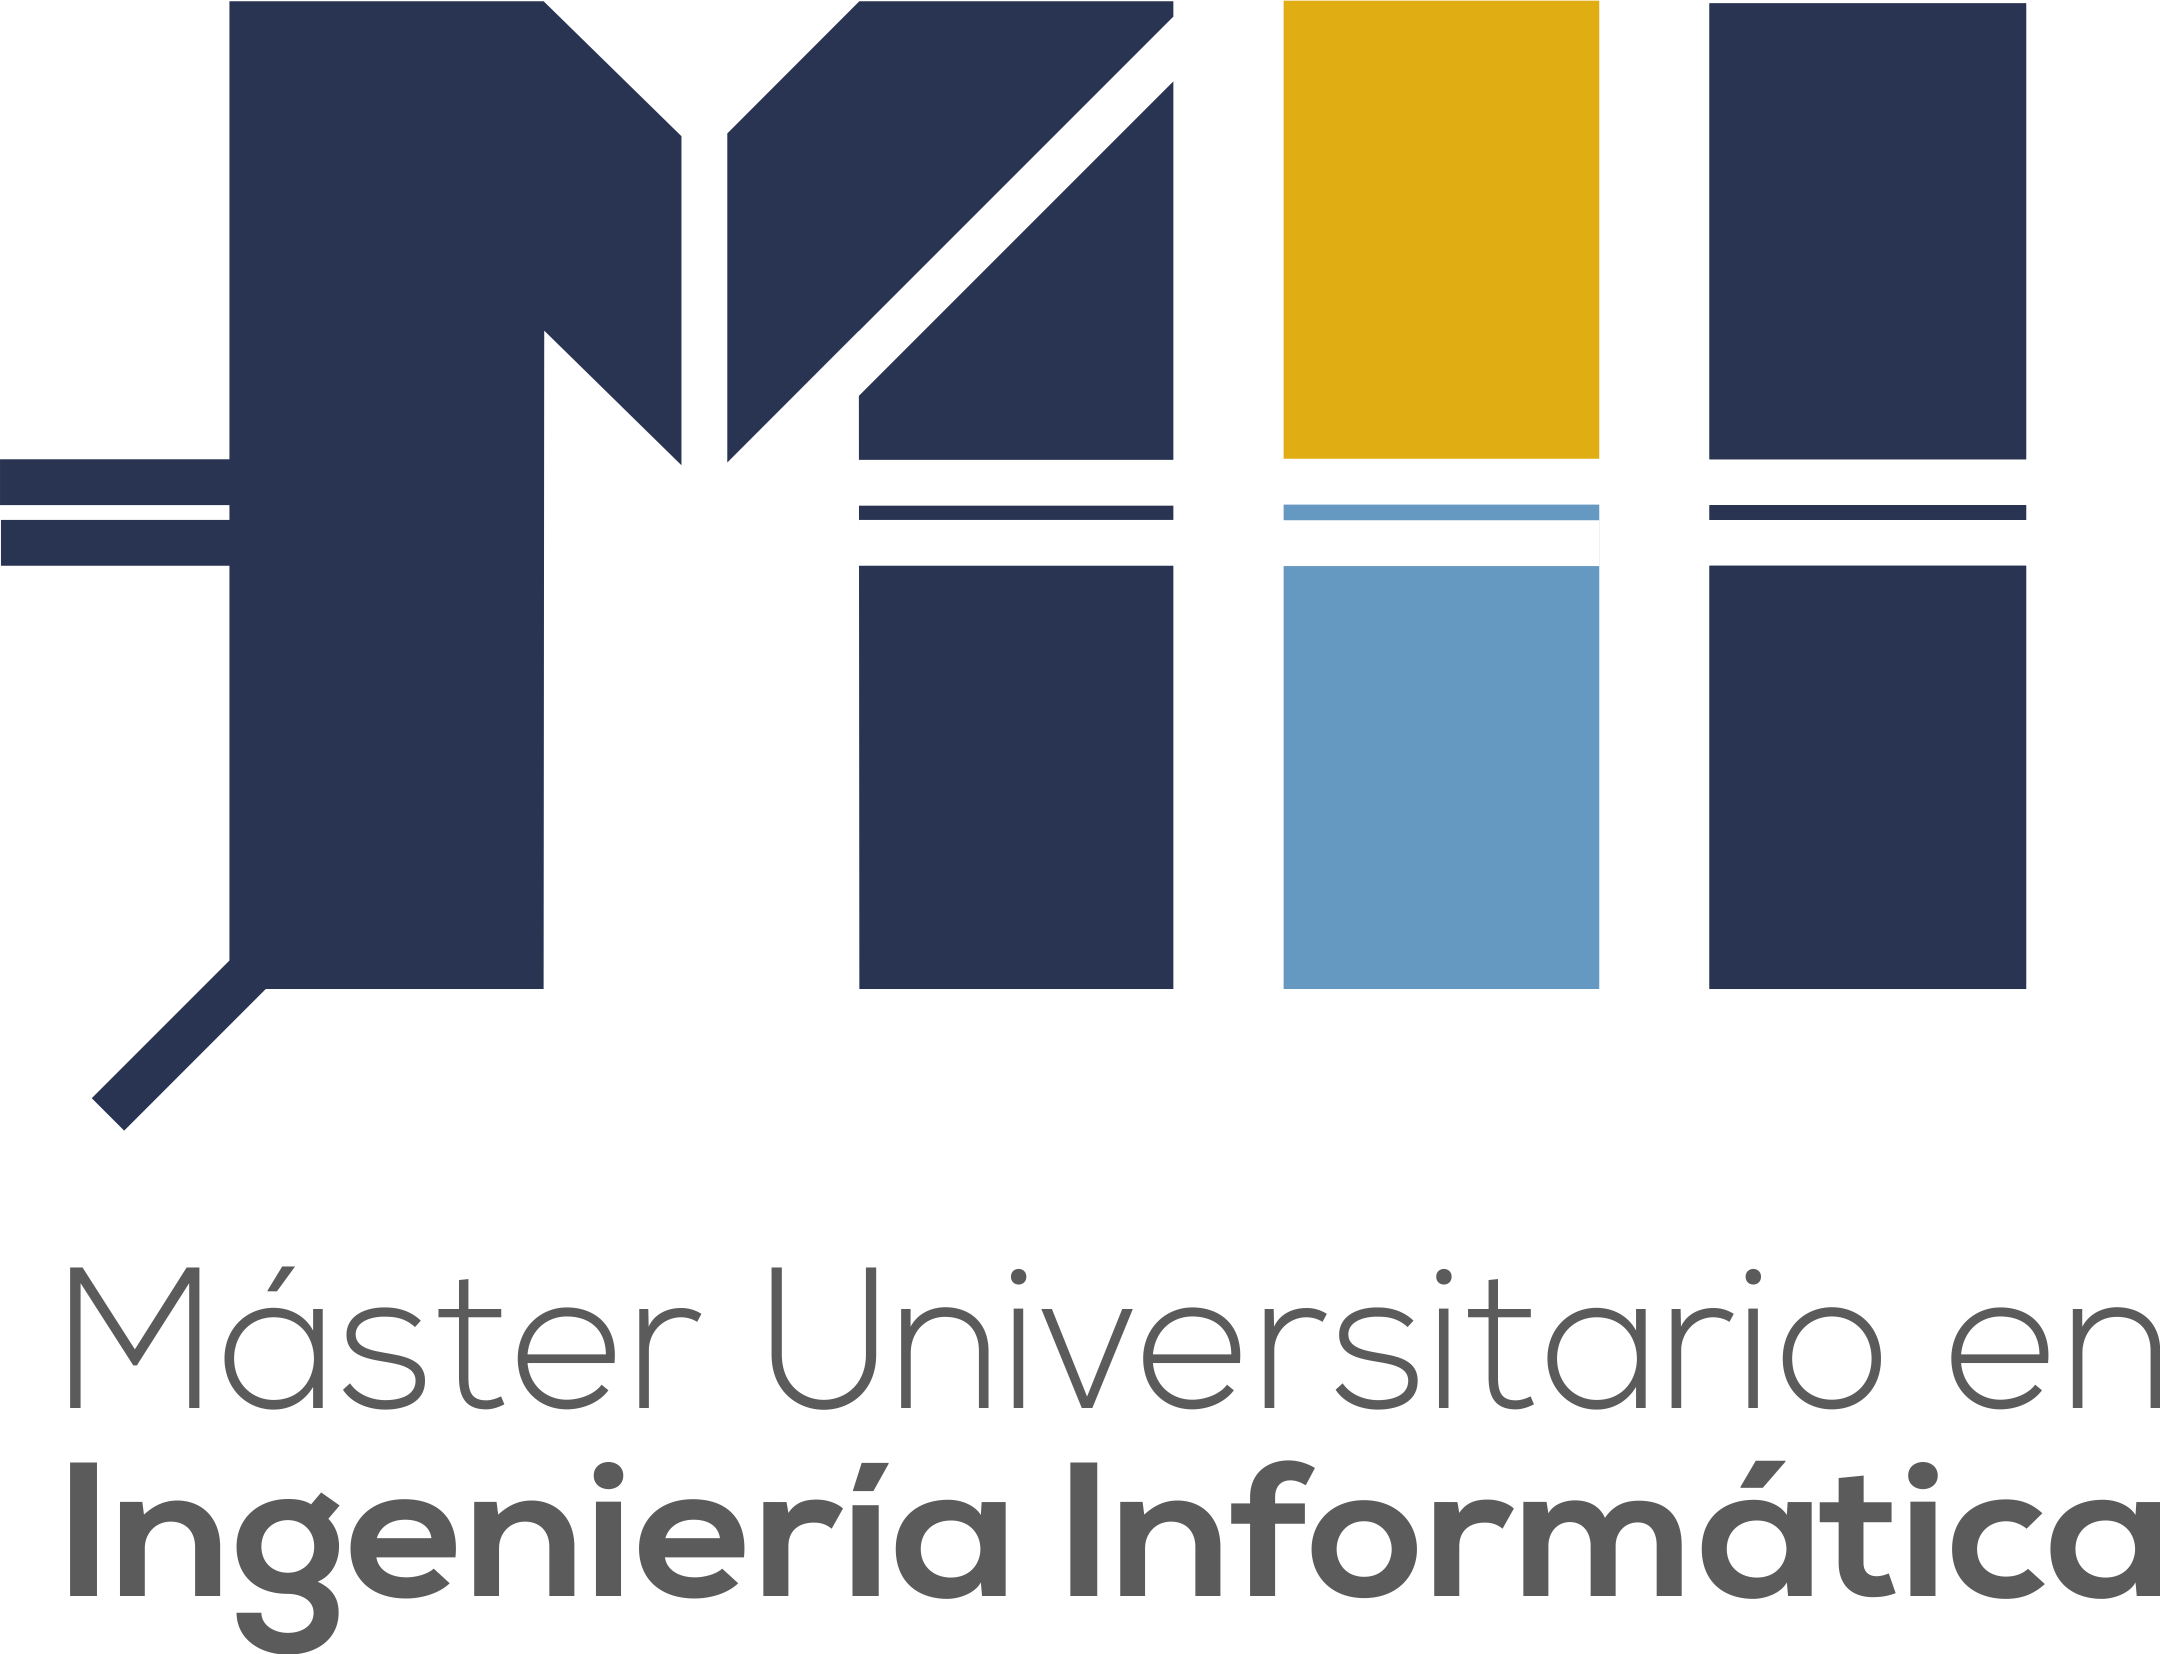 Cartel publicitario del máster Universitario en Ingeniería Informática